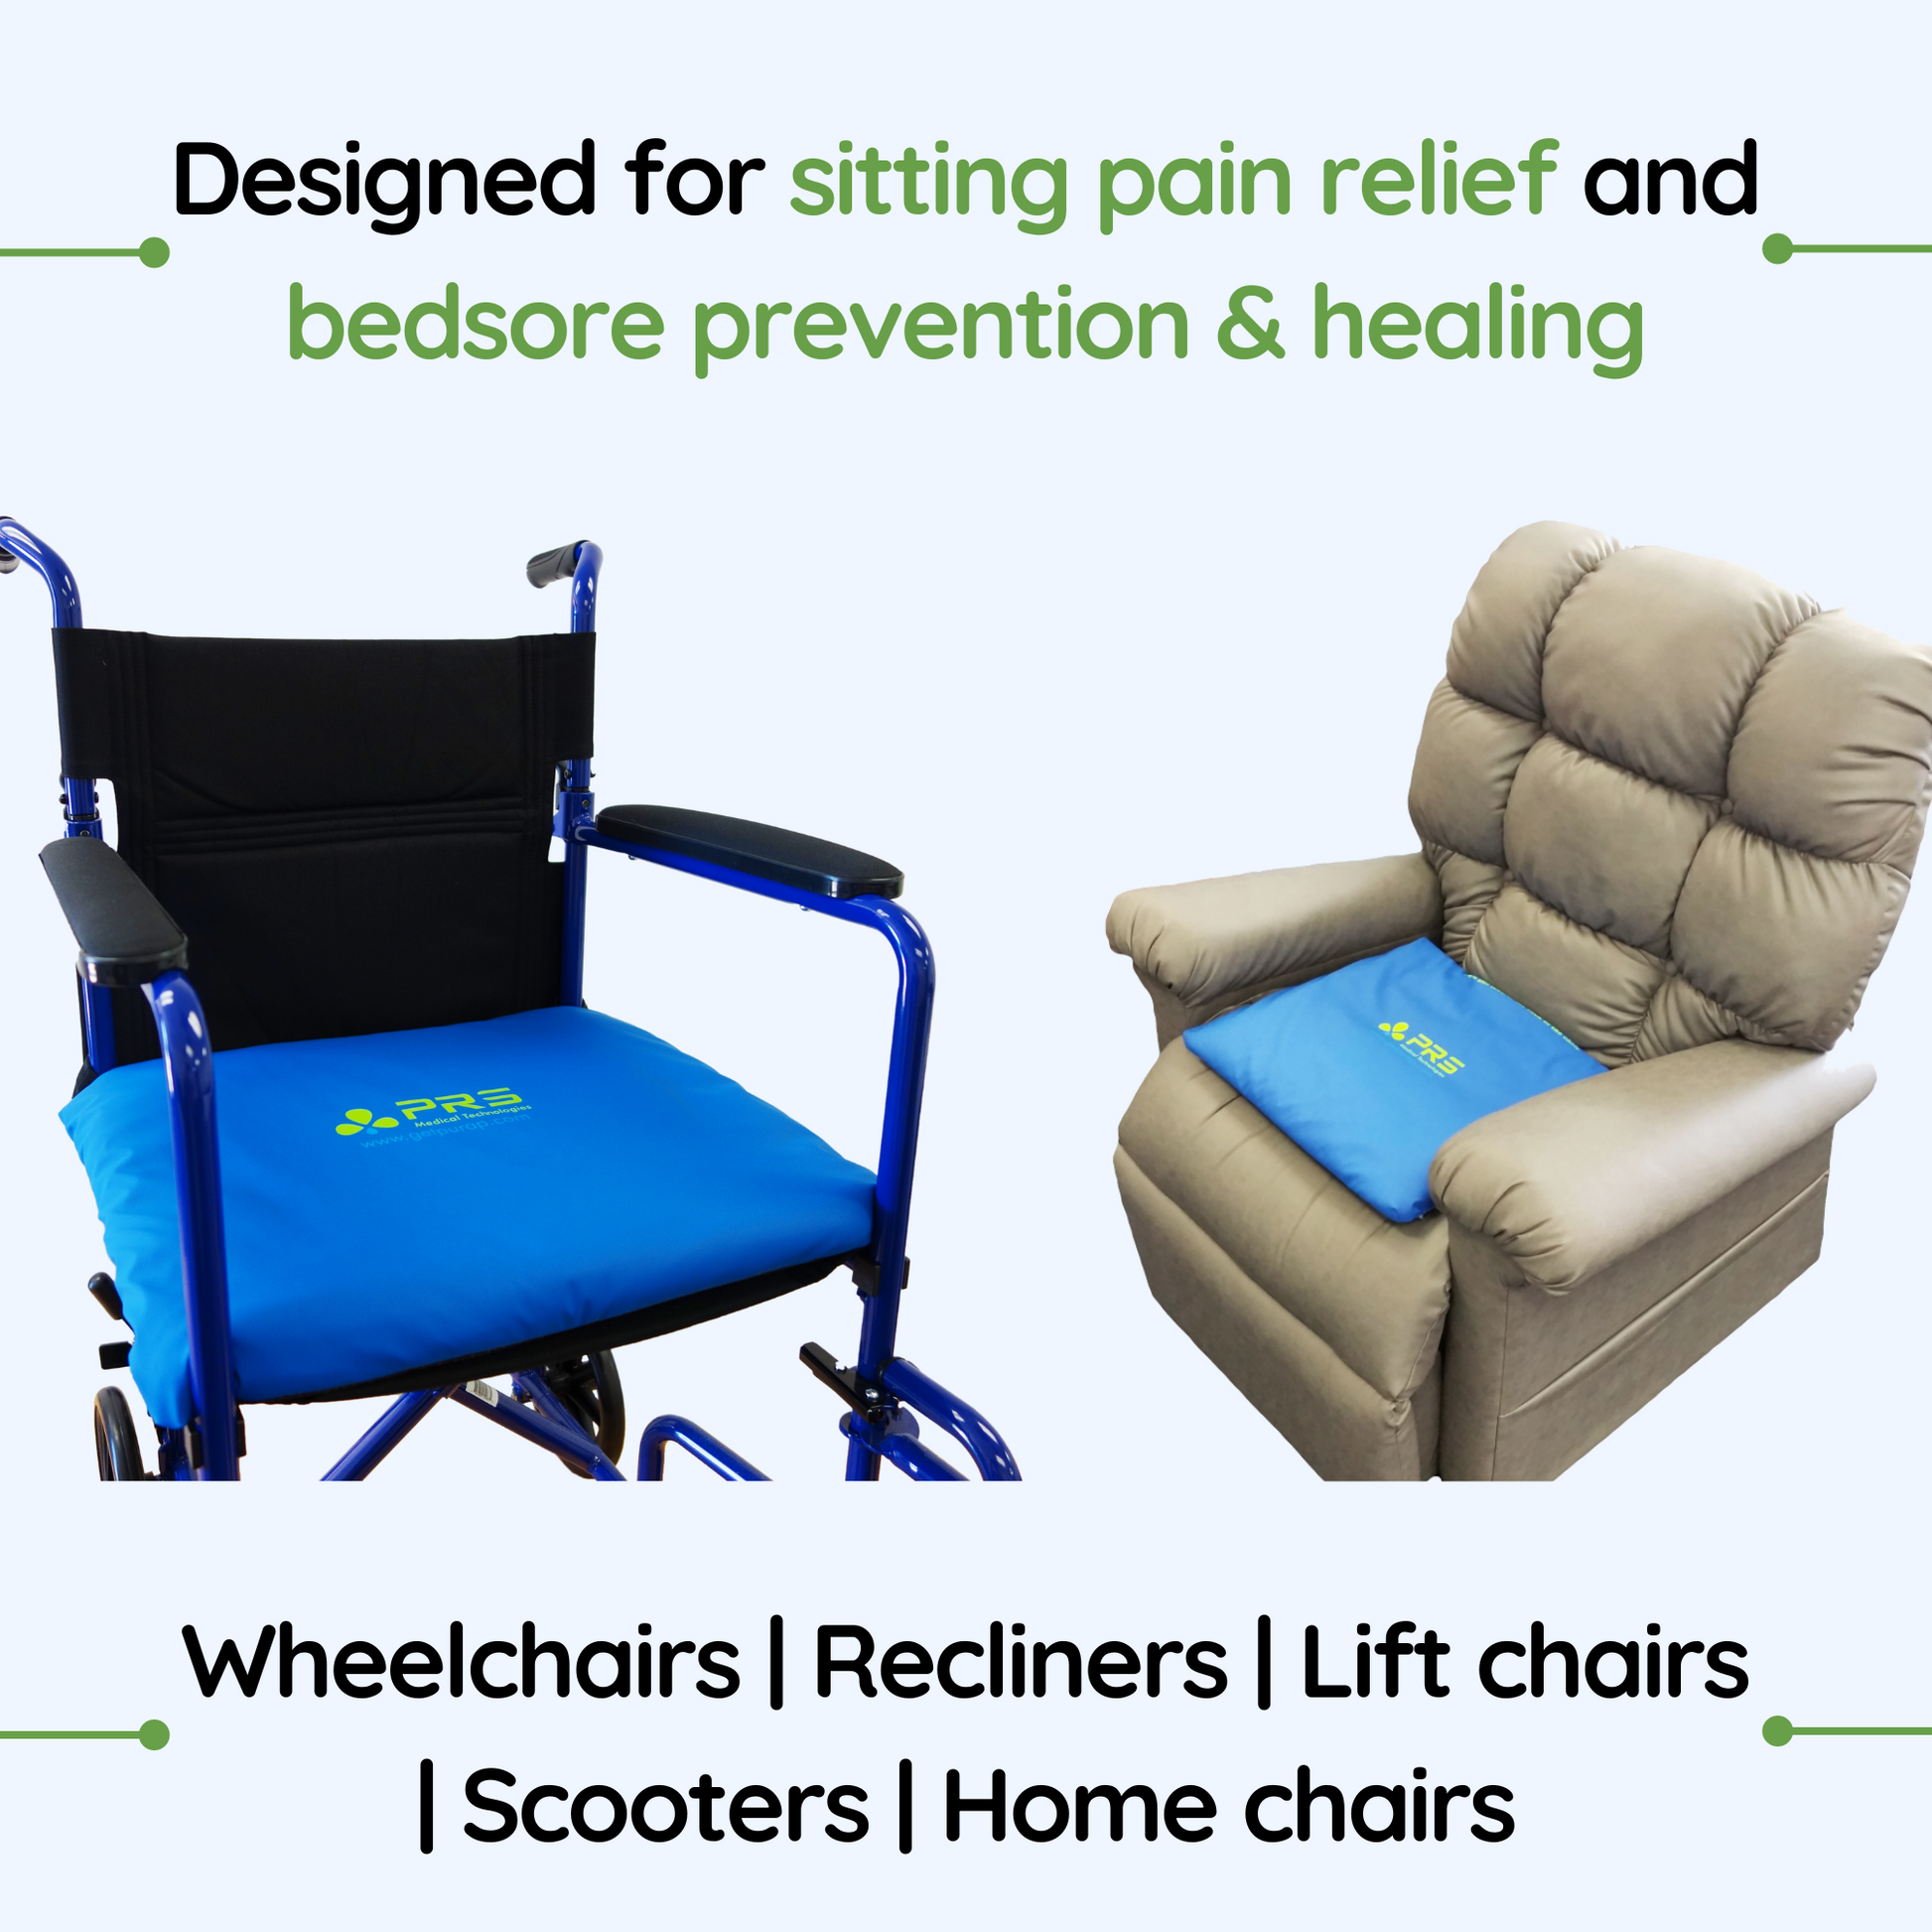 Pressure Cushions for Bottoms Pressure Sores, Wheel Chair Air Cushion  Inflatable Seat Mattress Anti Bedsore Prevent Decubitus Wheelchair Cushions  for